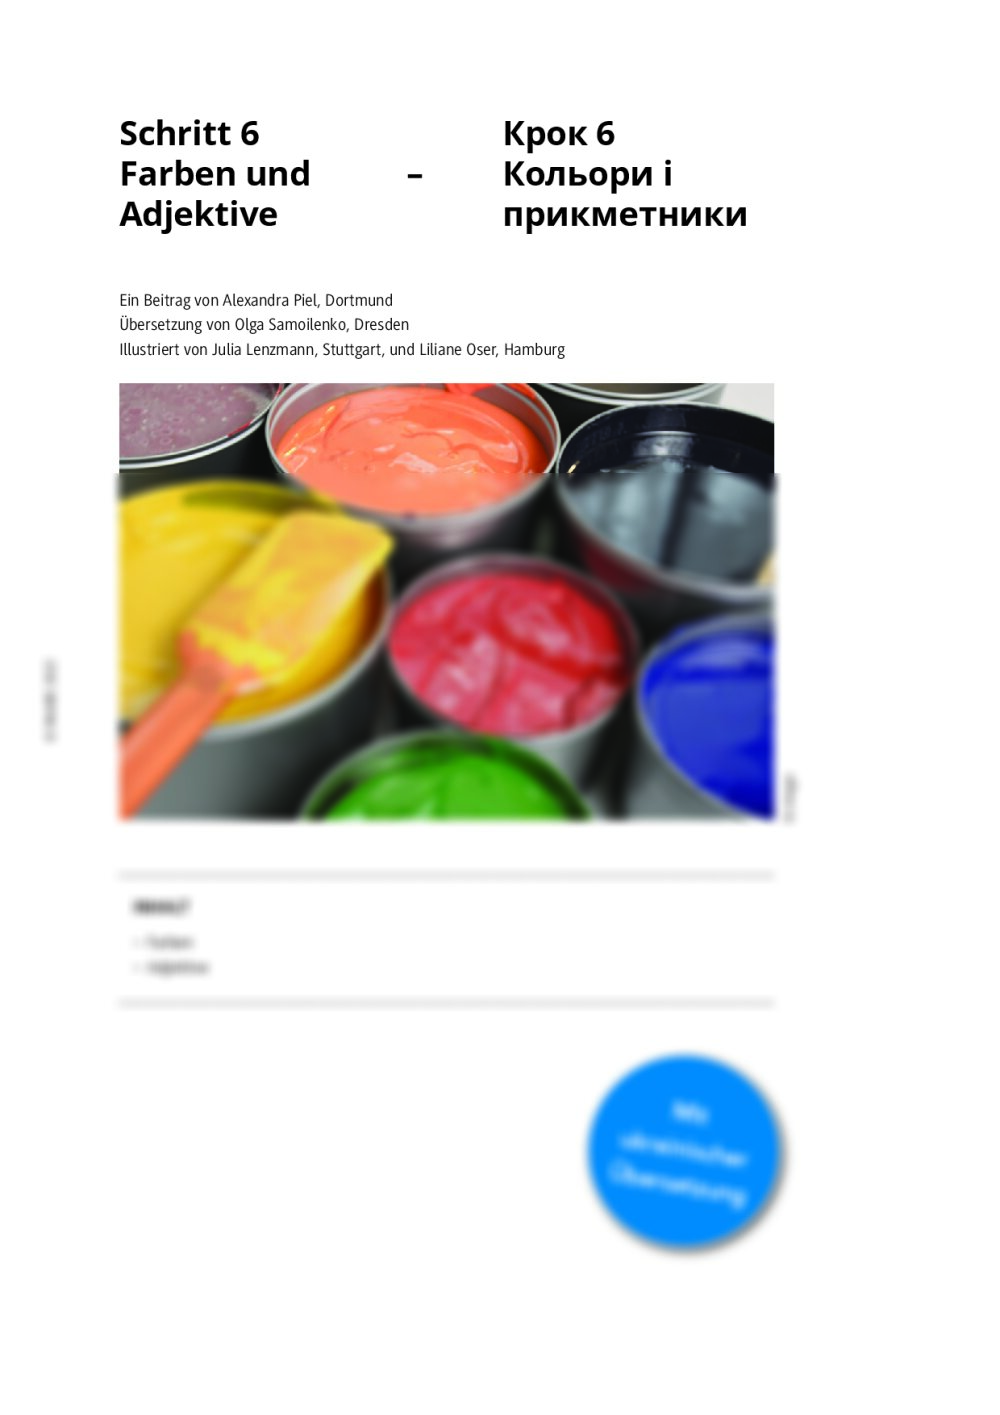 Schritt 6: Farben und Adjektive (mit ukrainischer Übersetzung) - Seite 1